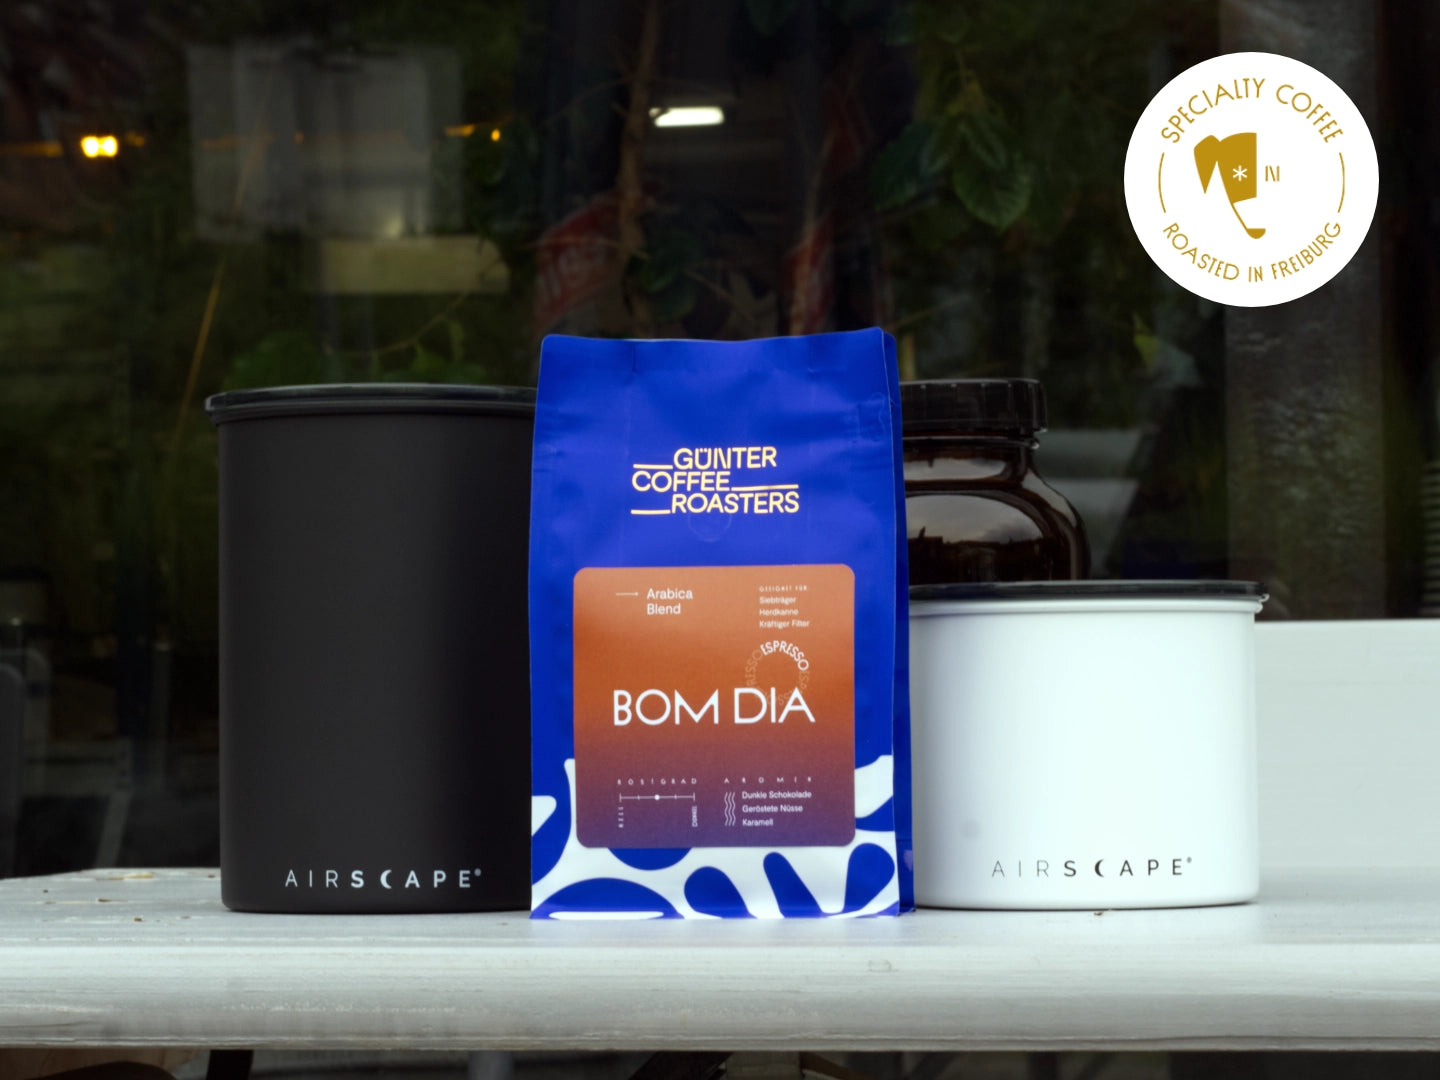 Titelbild zum Artikel über die Kaffeeaufbewahrung. Zu sehen sind eine Verkaufsverpackung der Günter Coffee Roasters in strahlendem Blau mit goldenem Logo und Bom-Dia-Etikett. Links und rechts davon jeweils eine Airscape-Dose in schwarz und weiß.